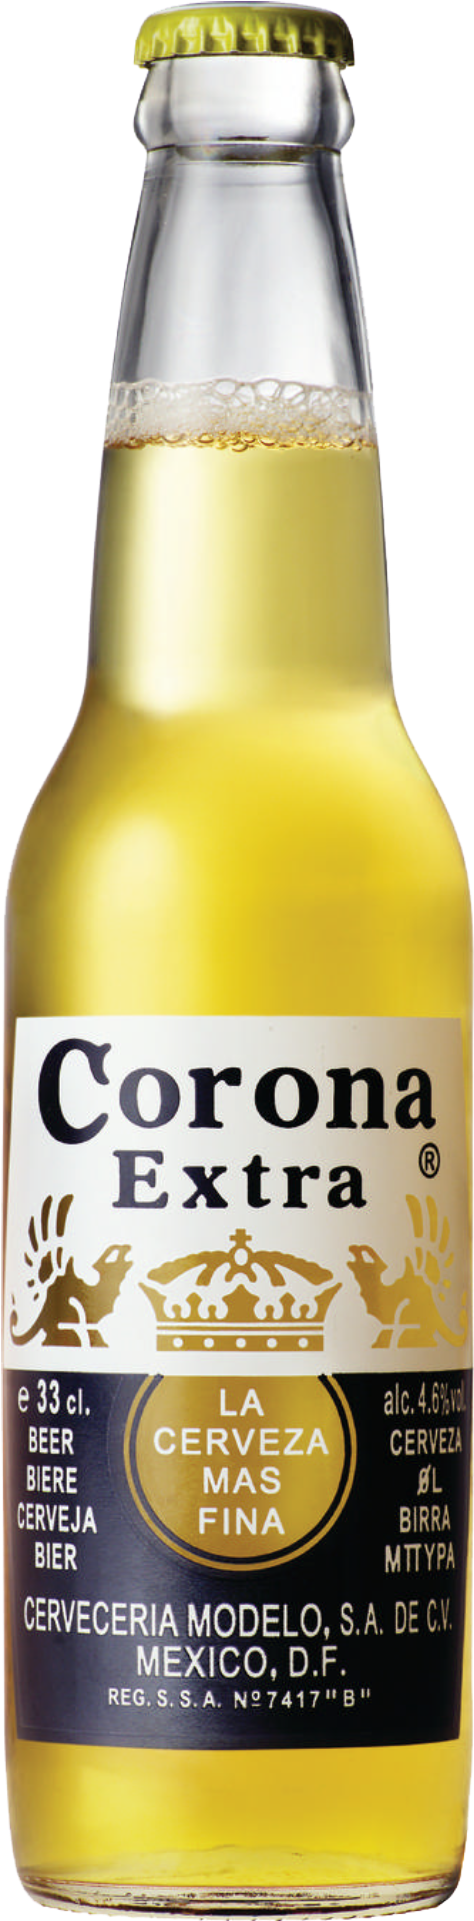 Corona Bottle Transparent Background